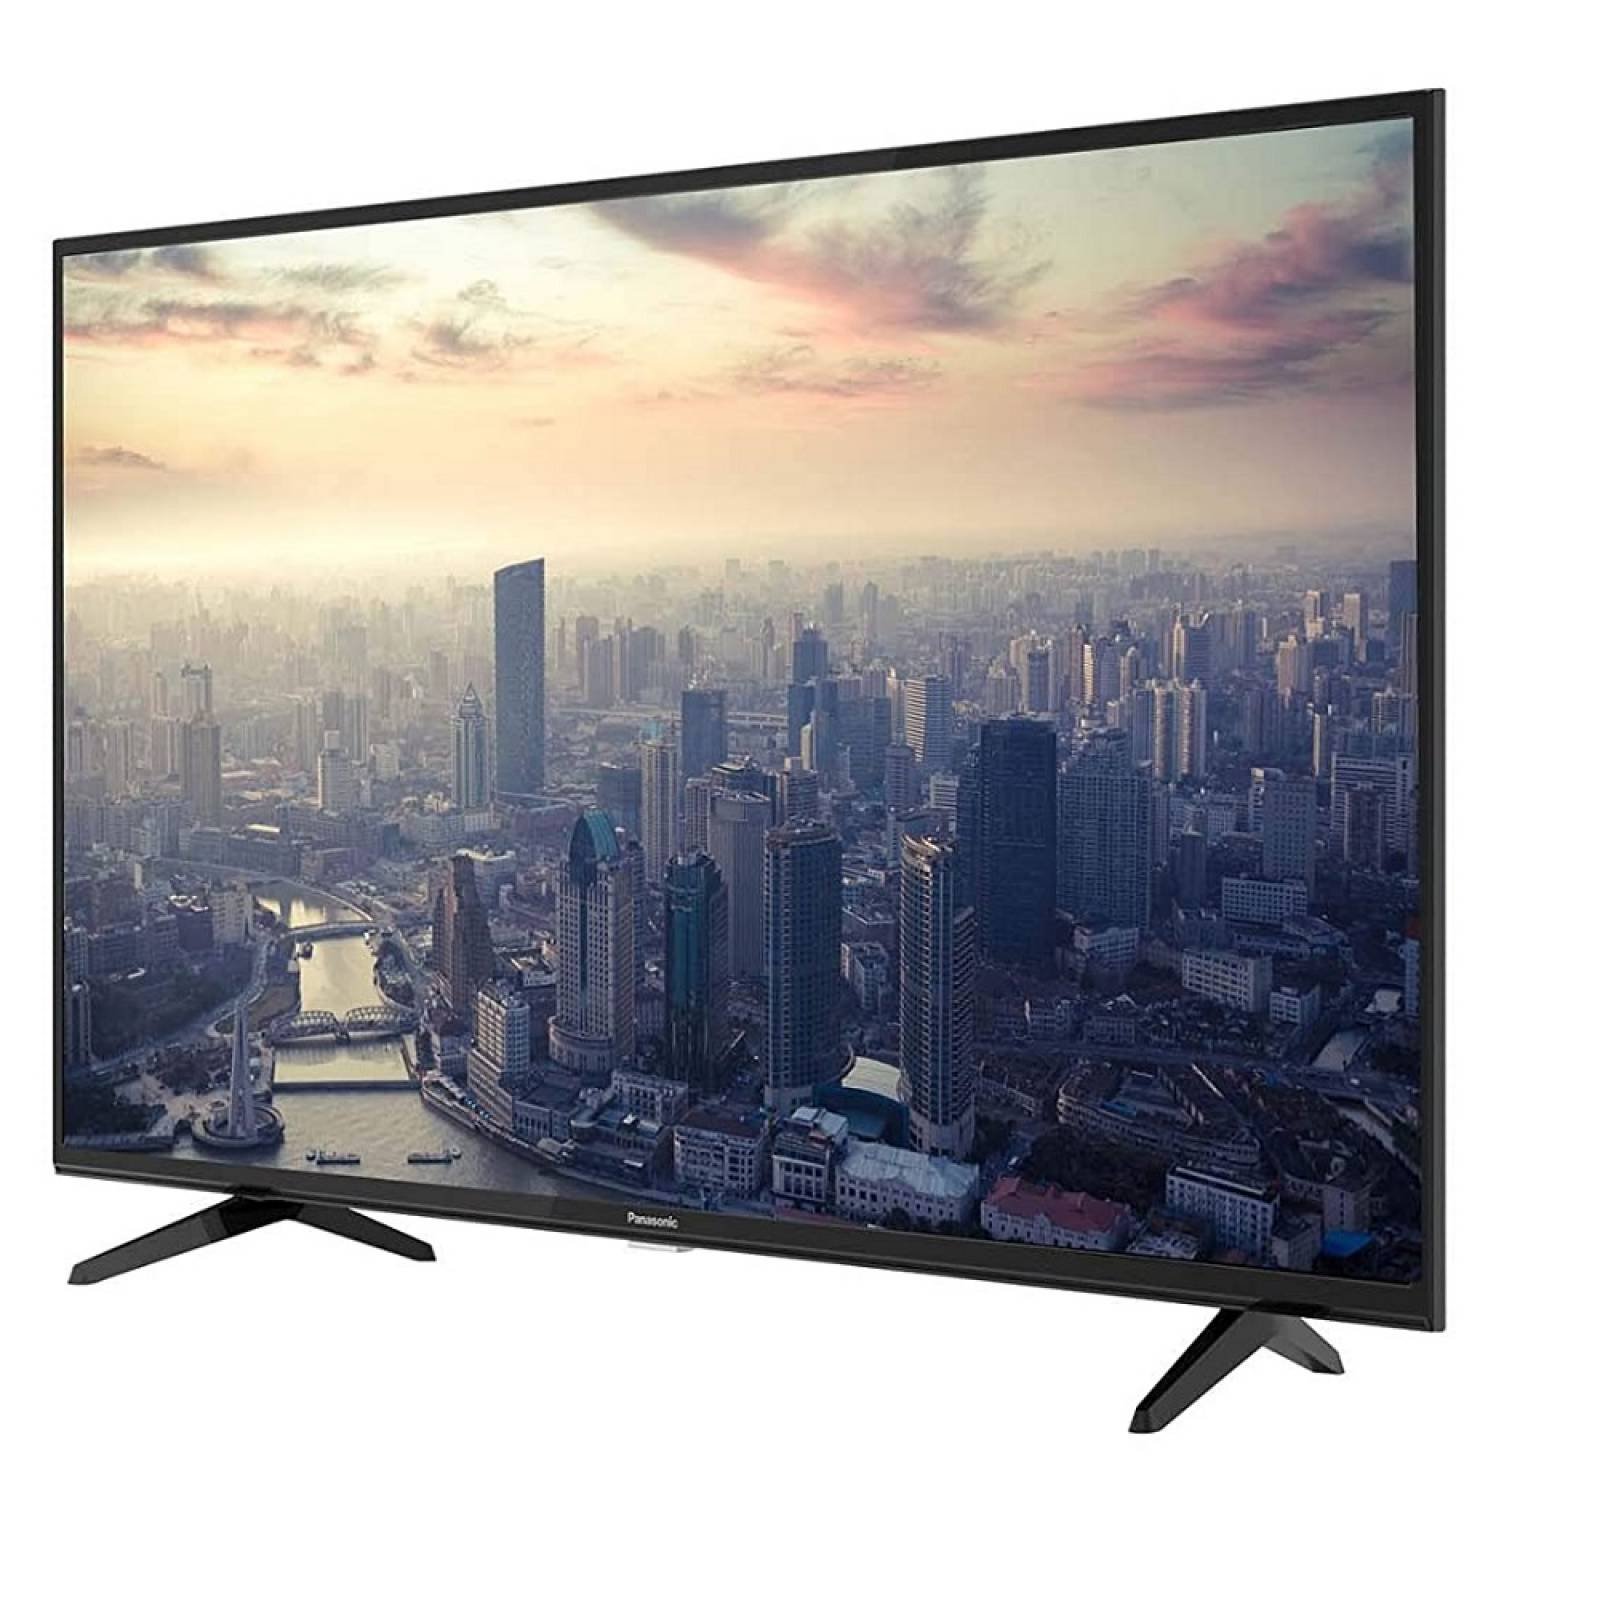 Smart TV Panasonic 32 HD Vivid Digital Pro TC-32FS500X